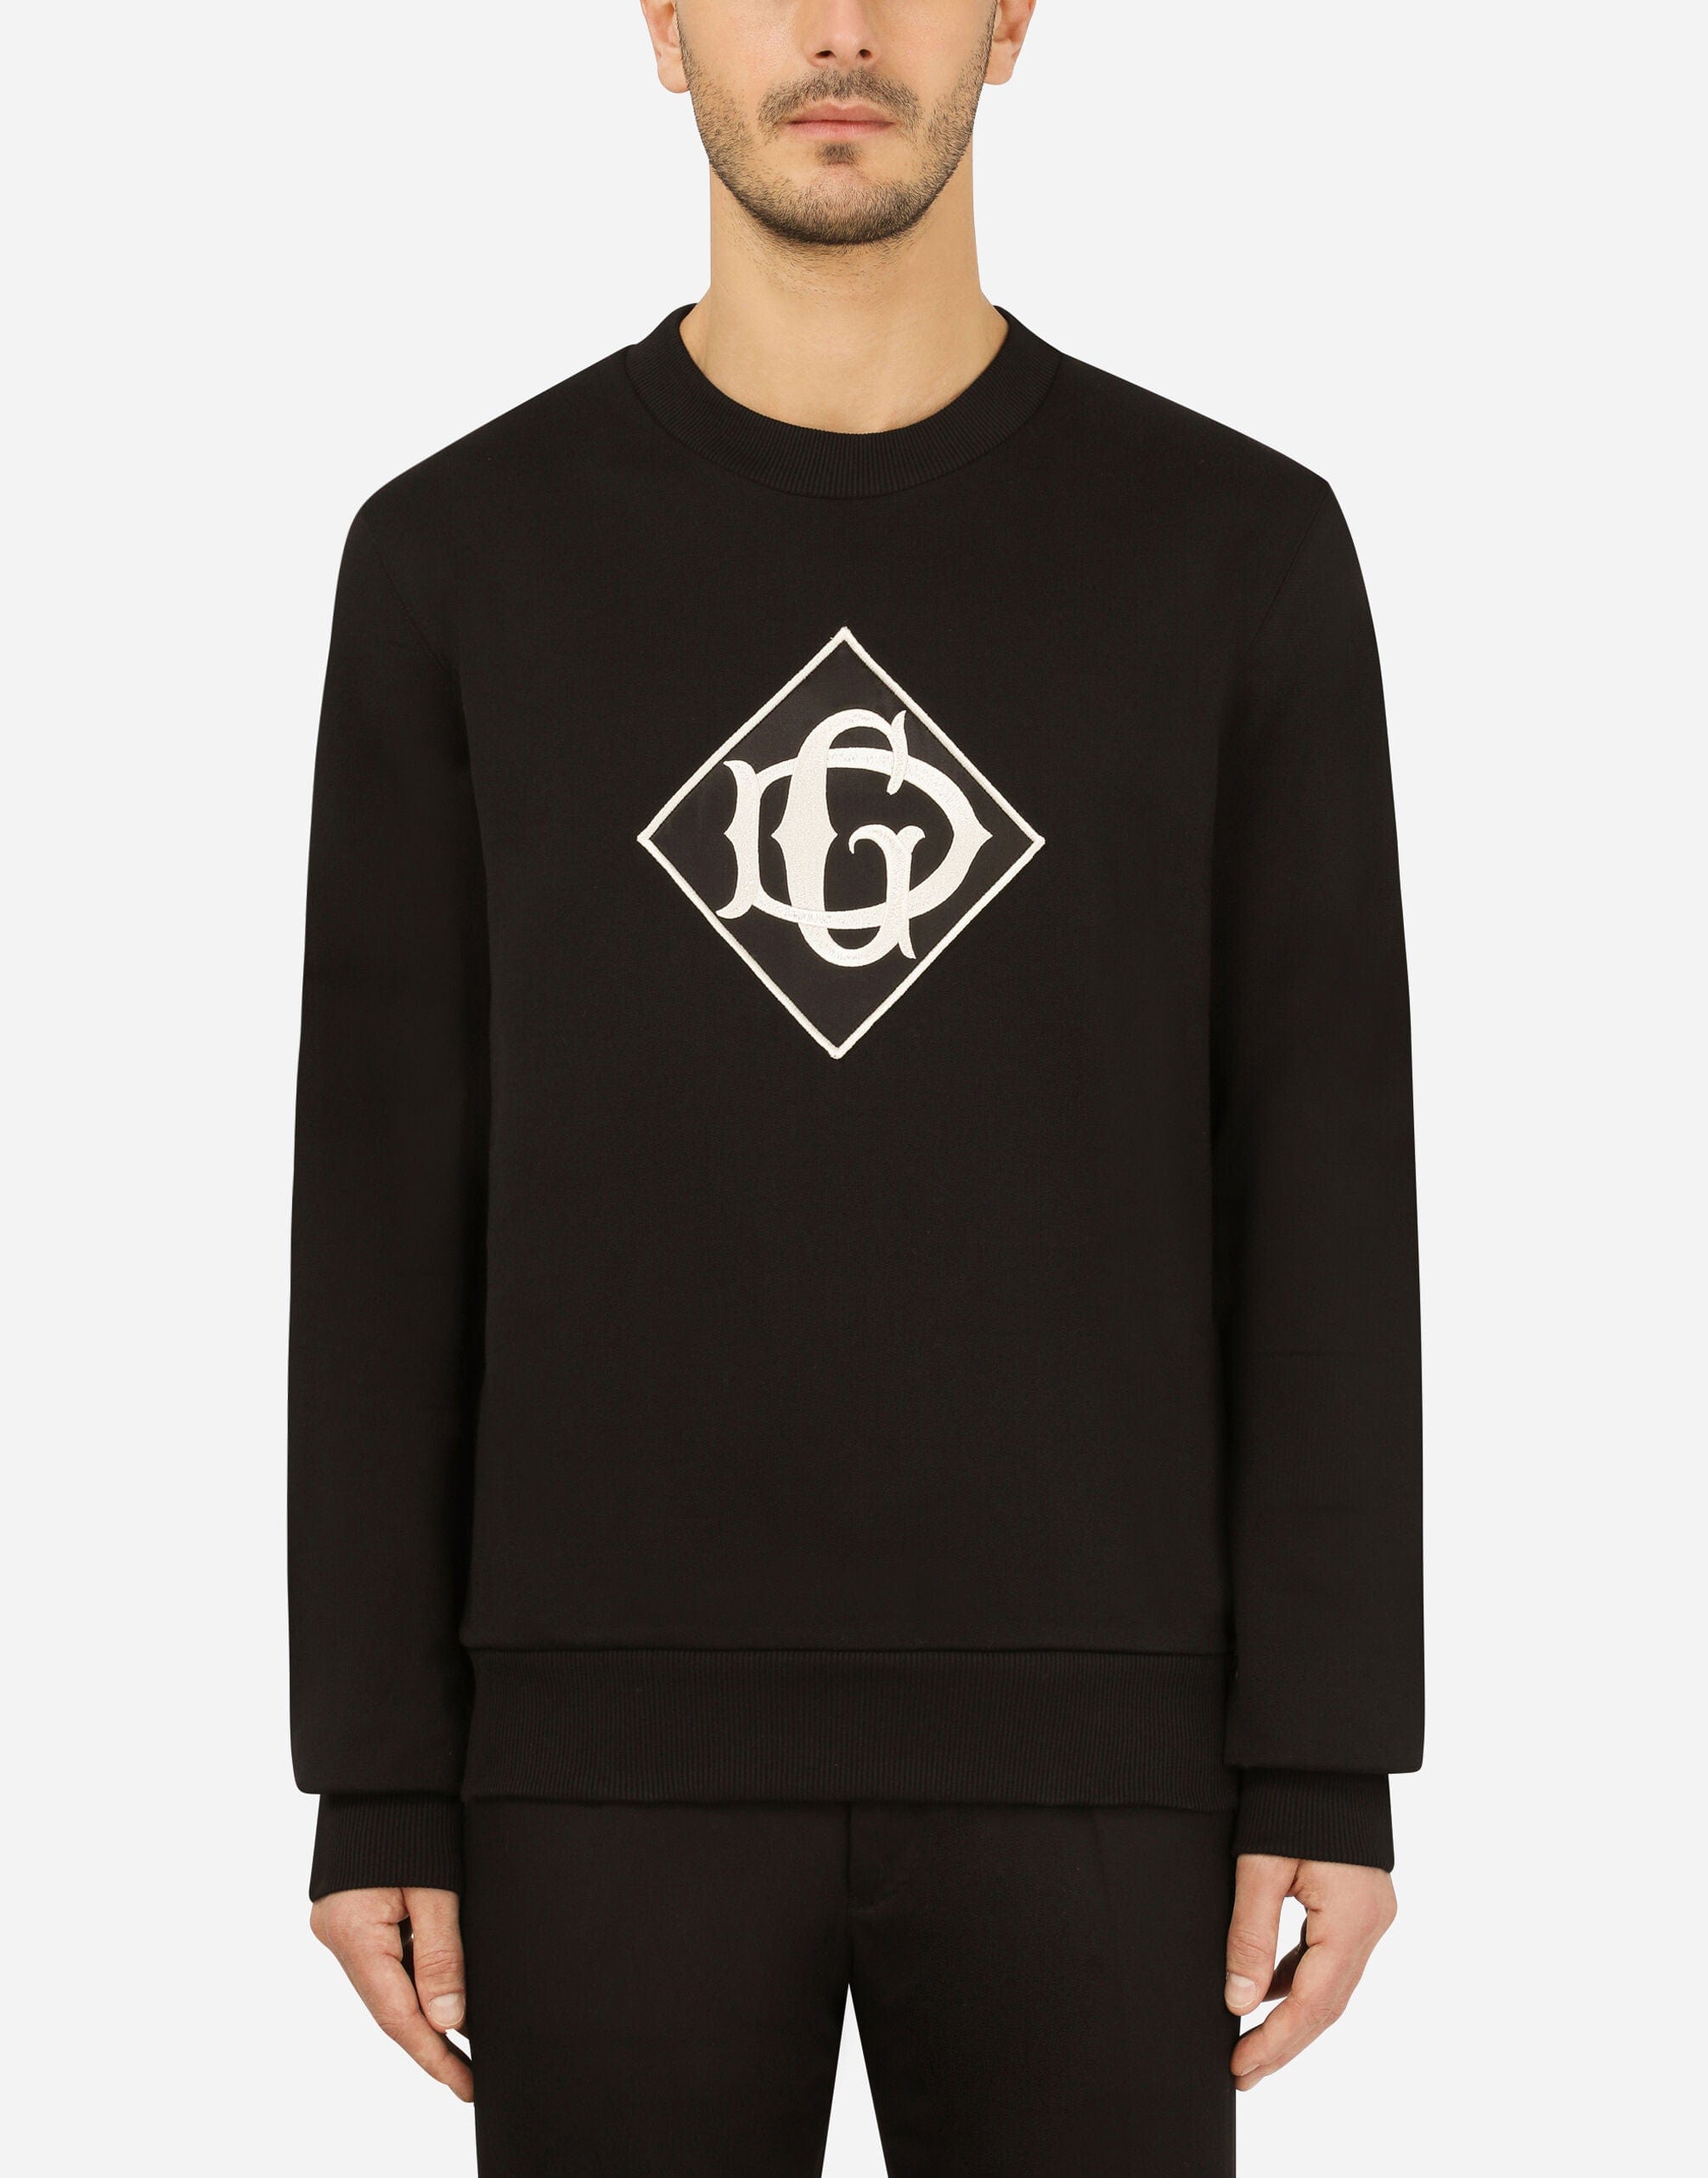 Dolce & Gabbana Cotton Sweatshirt With DG Logo